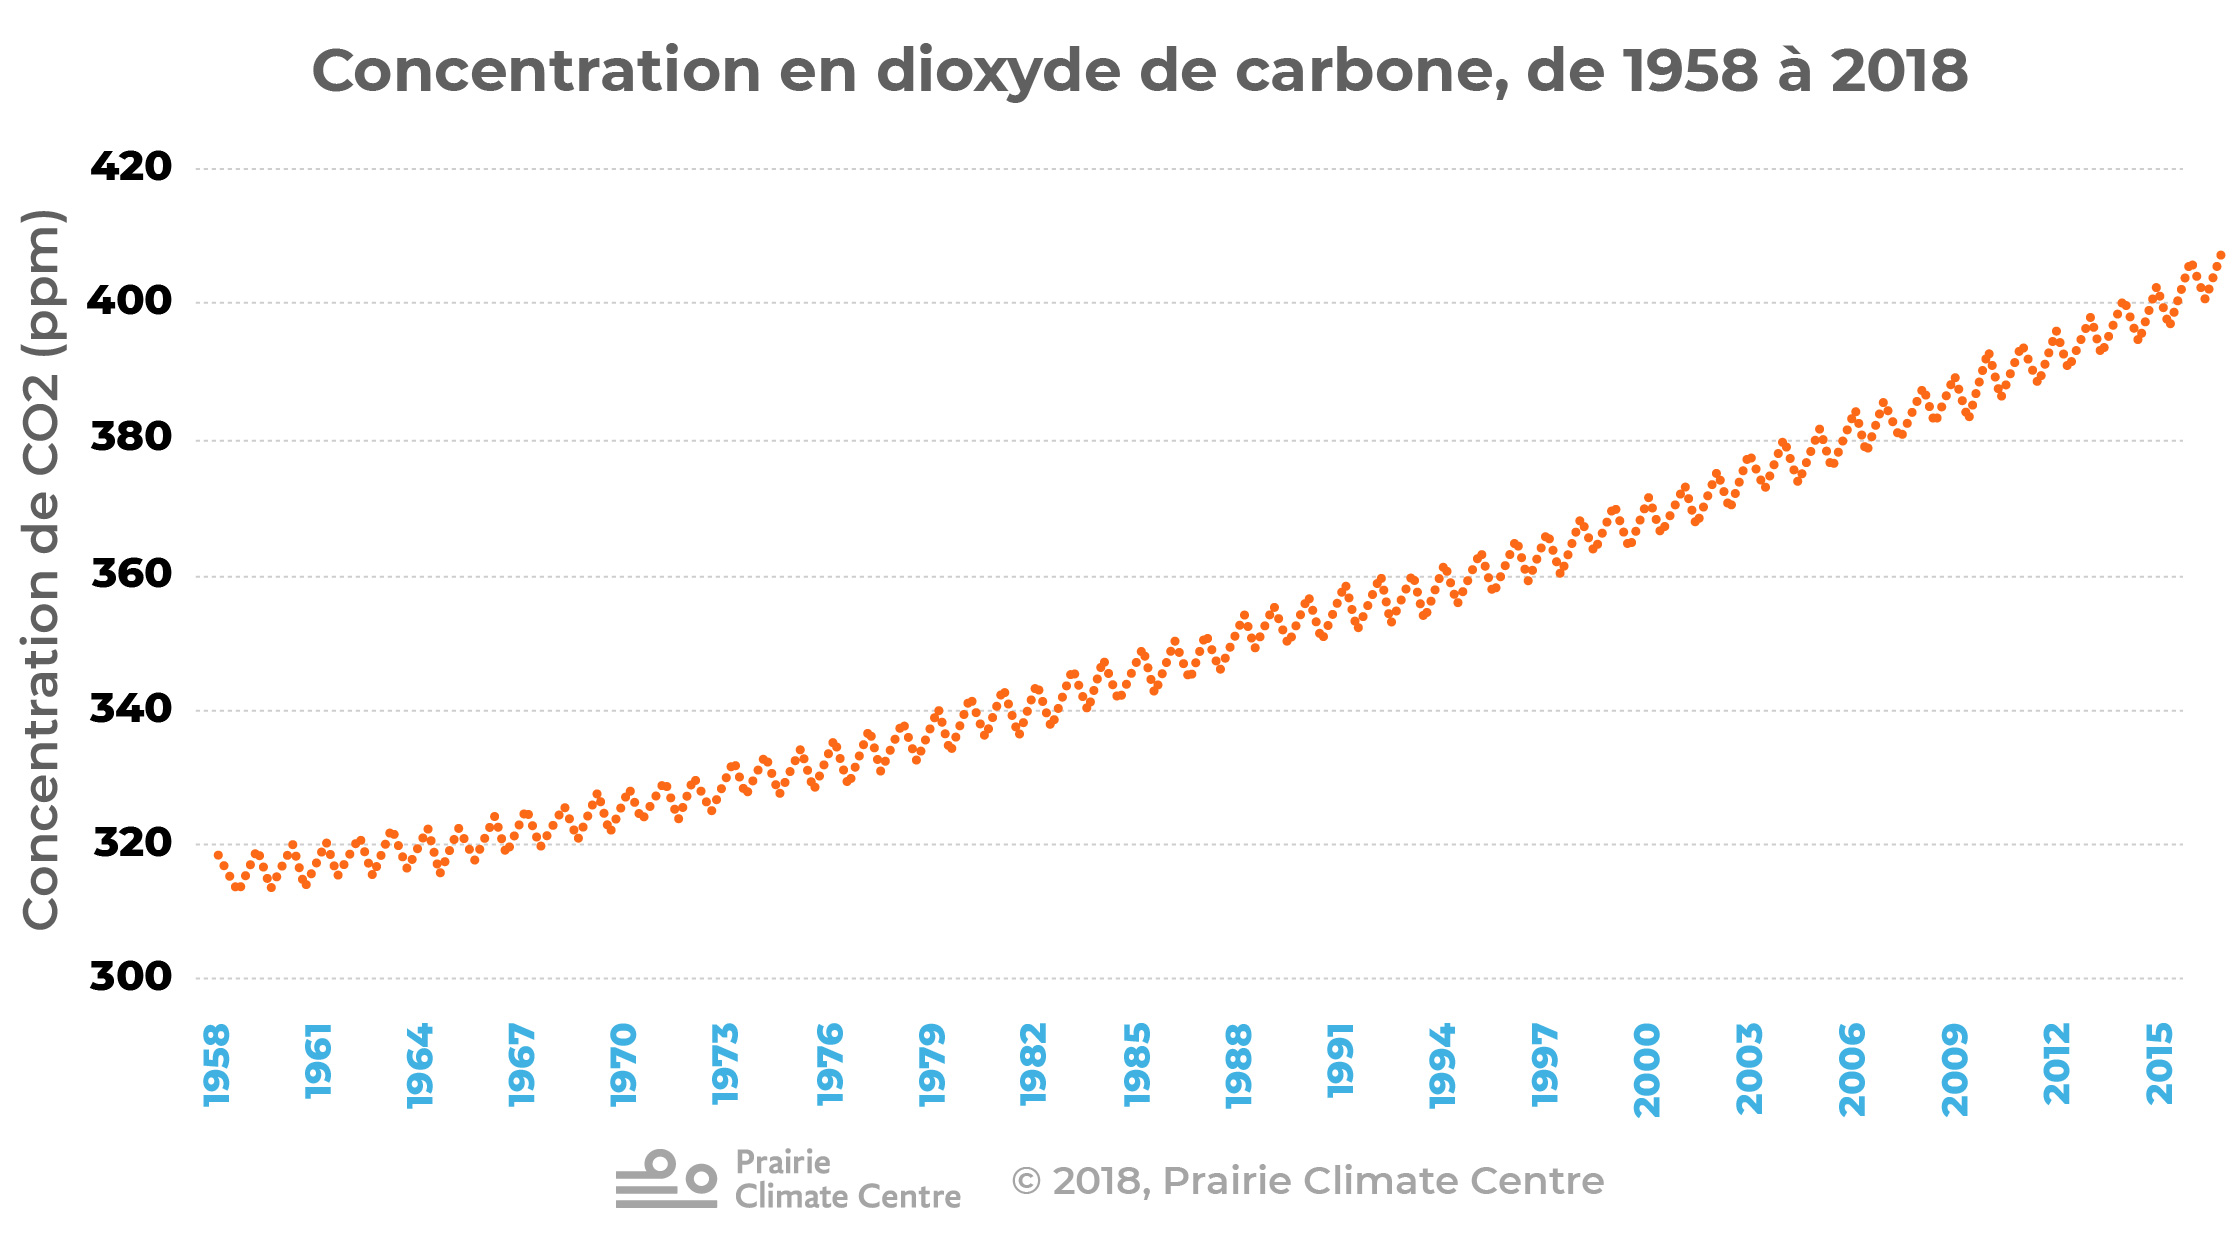 Contentration en dioxyde de carbonne, de 1958 à 2018